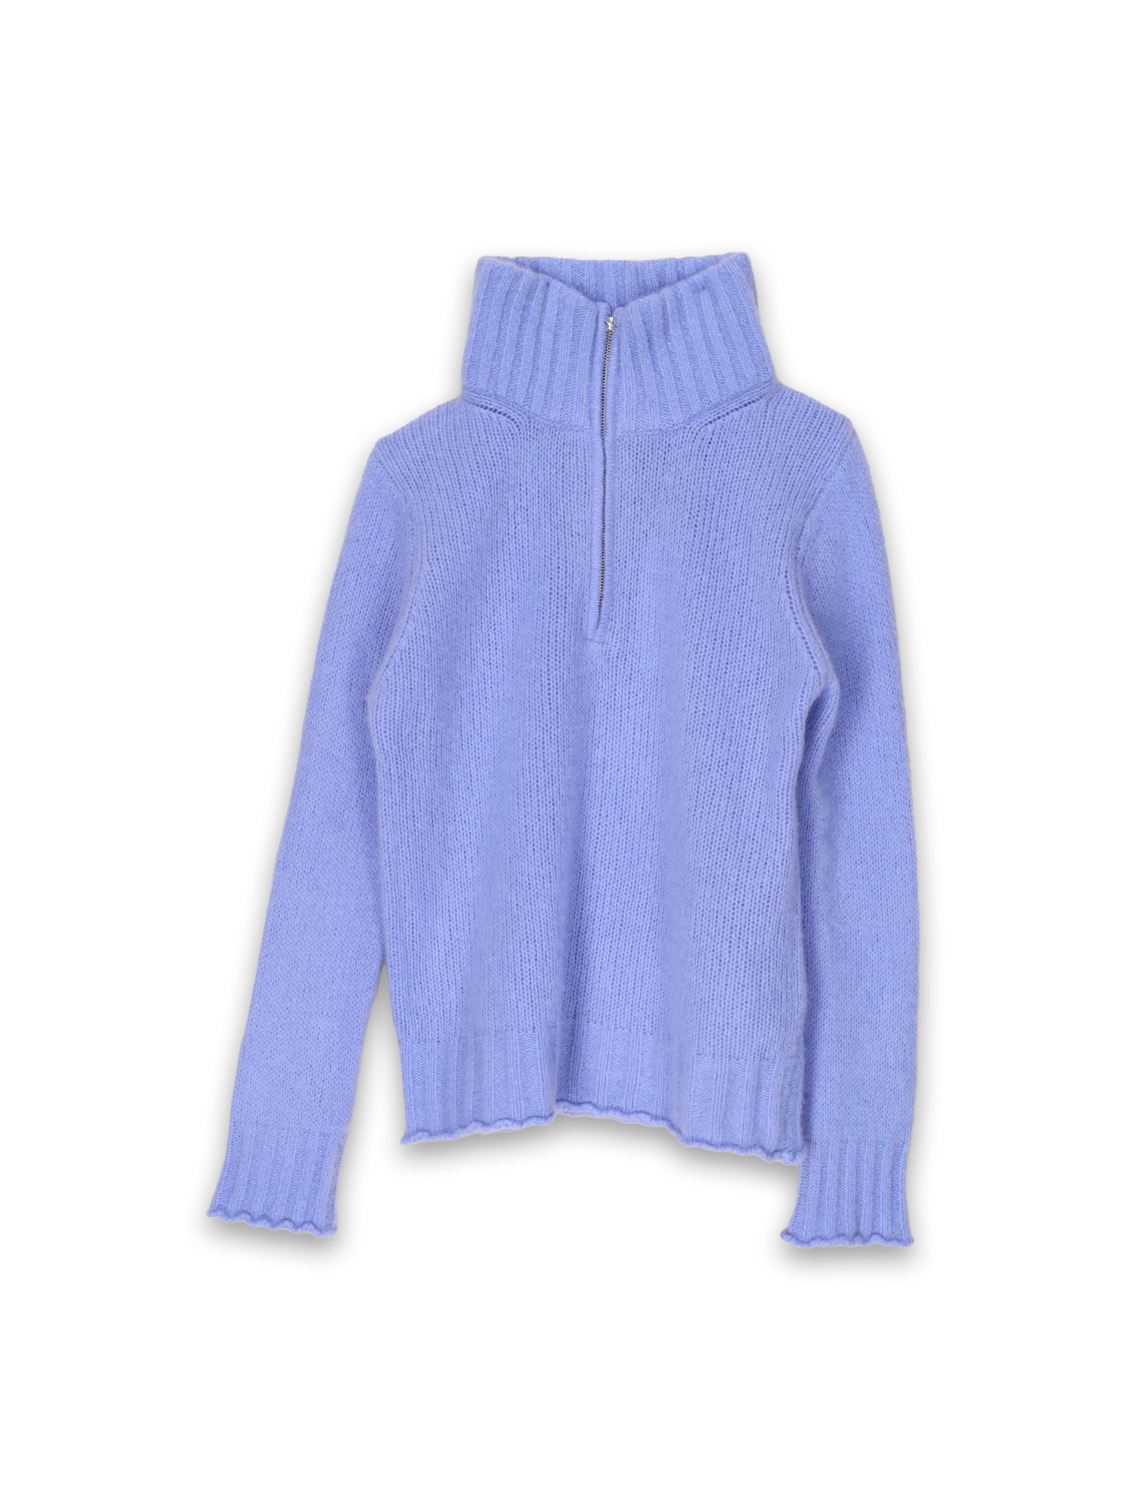 Stephan Boya Boya Race - Lightweight knitted sweater with cashmere zipper   blue M